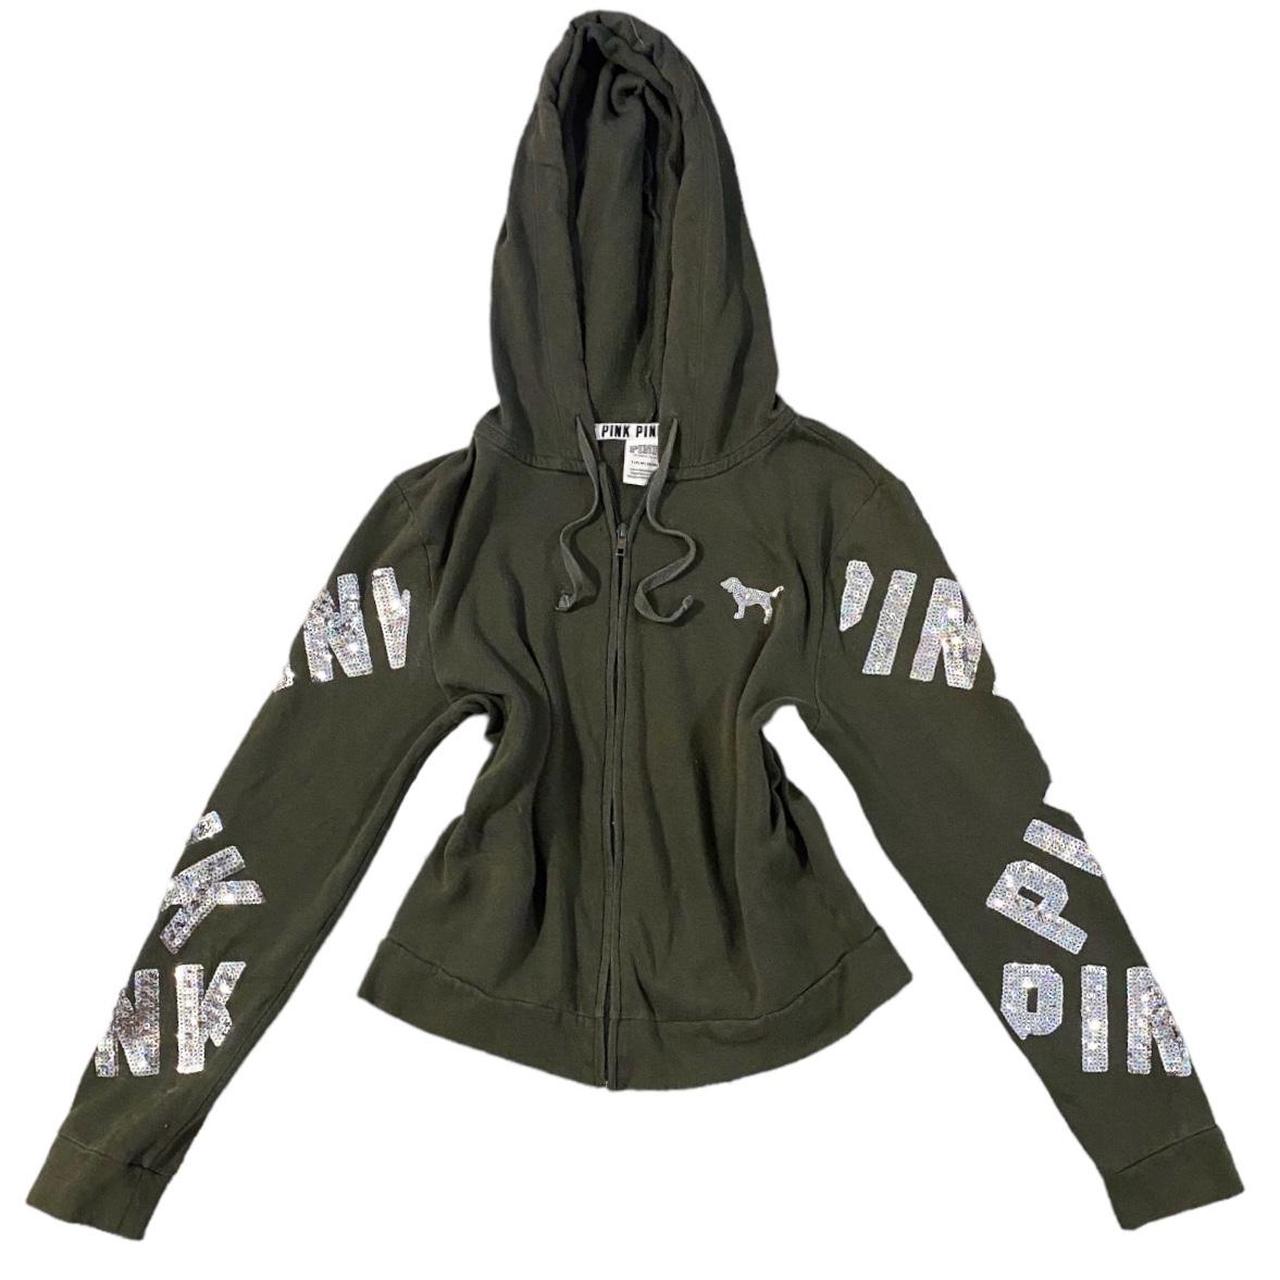 y2k PINK hoodie super cute black PINK brand zip up - Depop